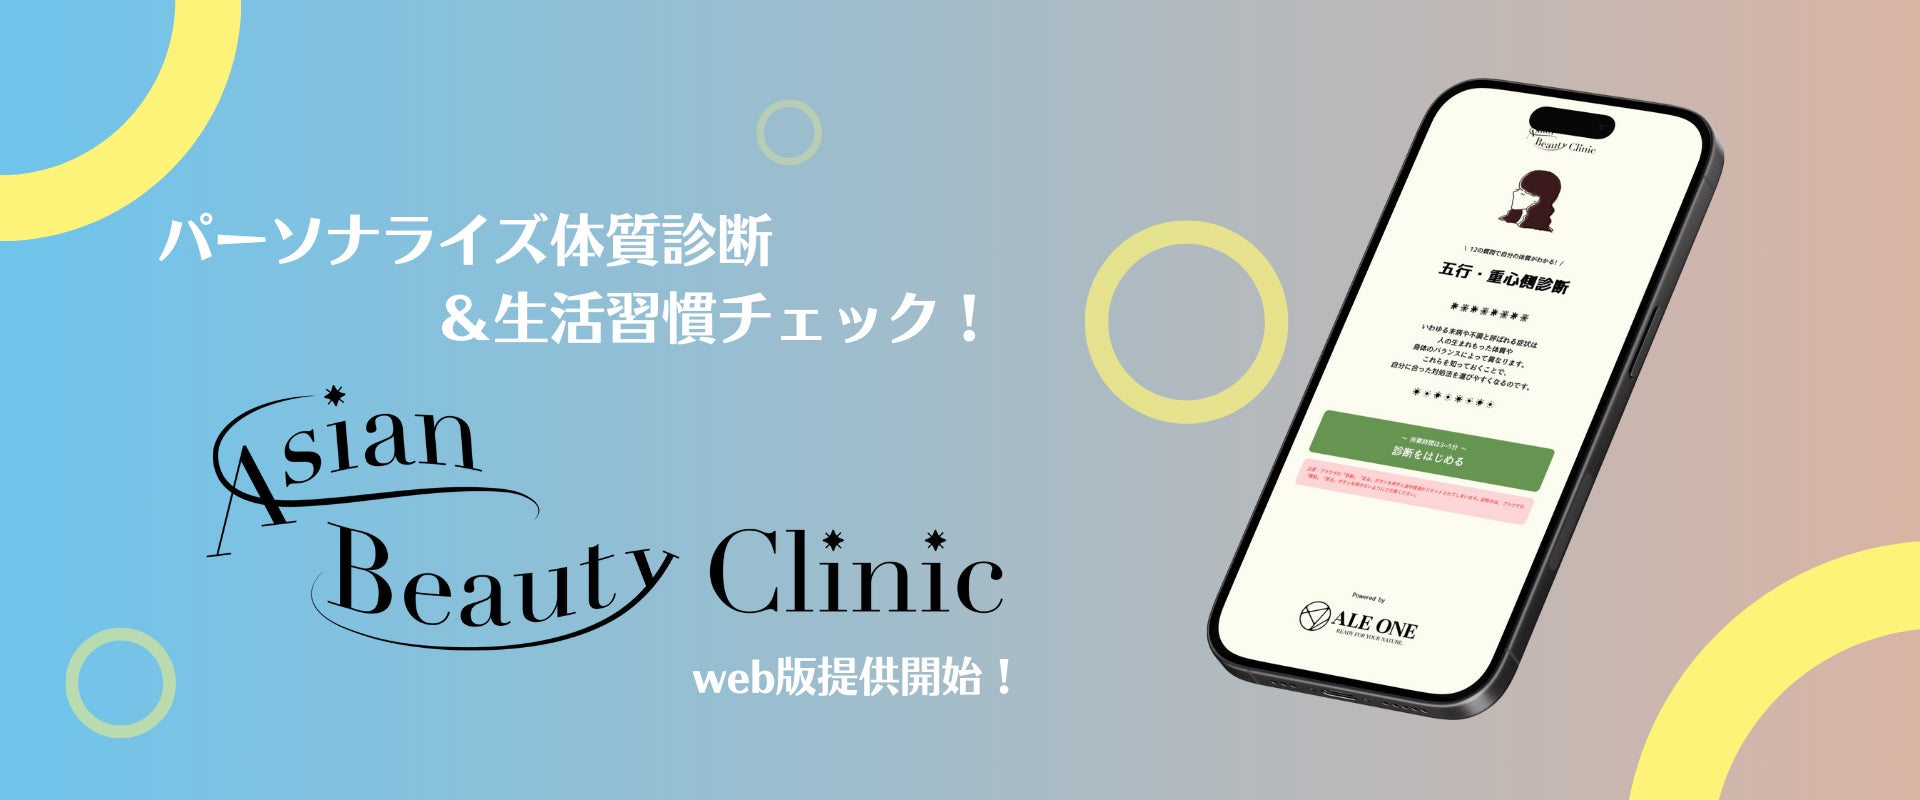 東洋医学×データであなただけのパーソナライズ体質診断と生活習慣チェック！webコンテンツ「Asian Beauty Clinic」を正式提供開始